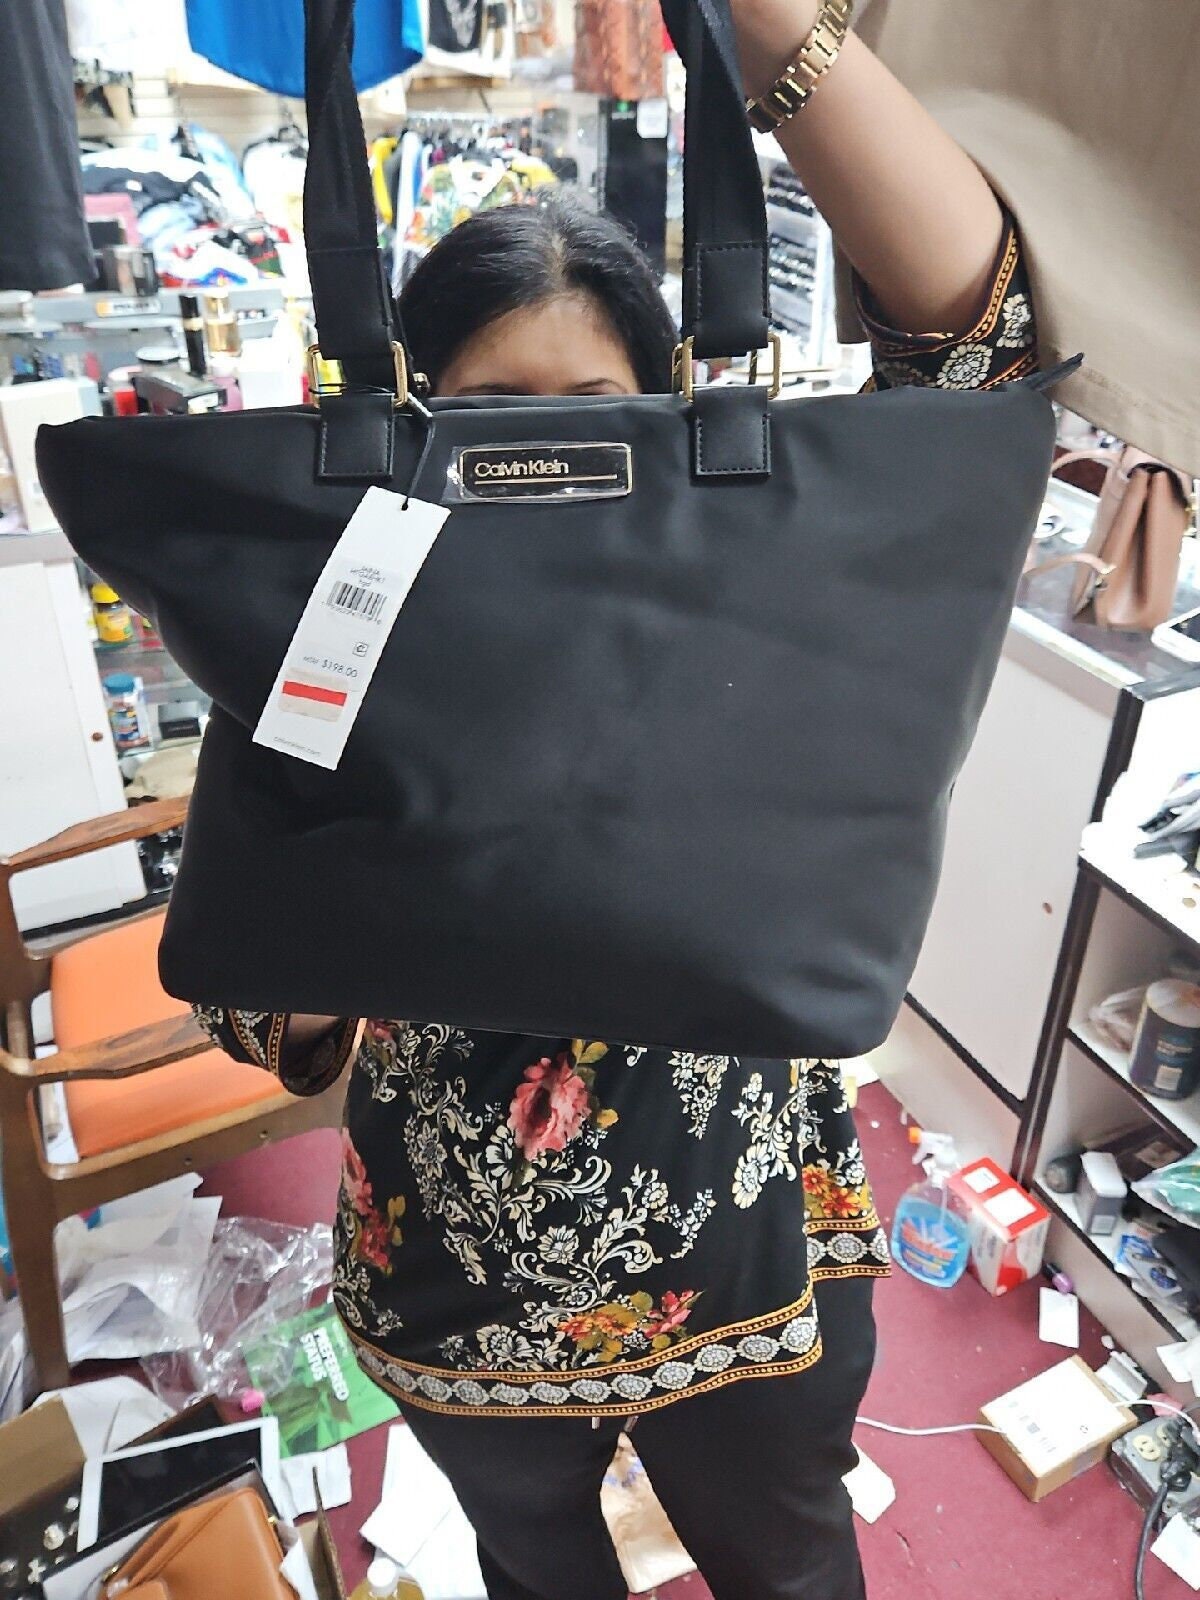 Calvin Klein Black Handbags, Bags